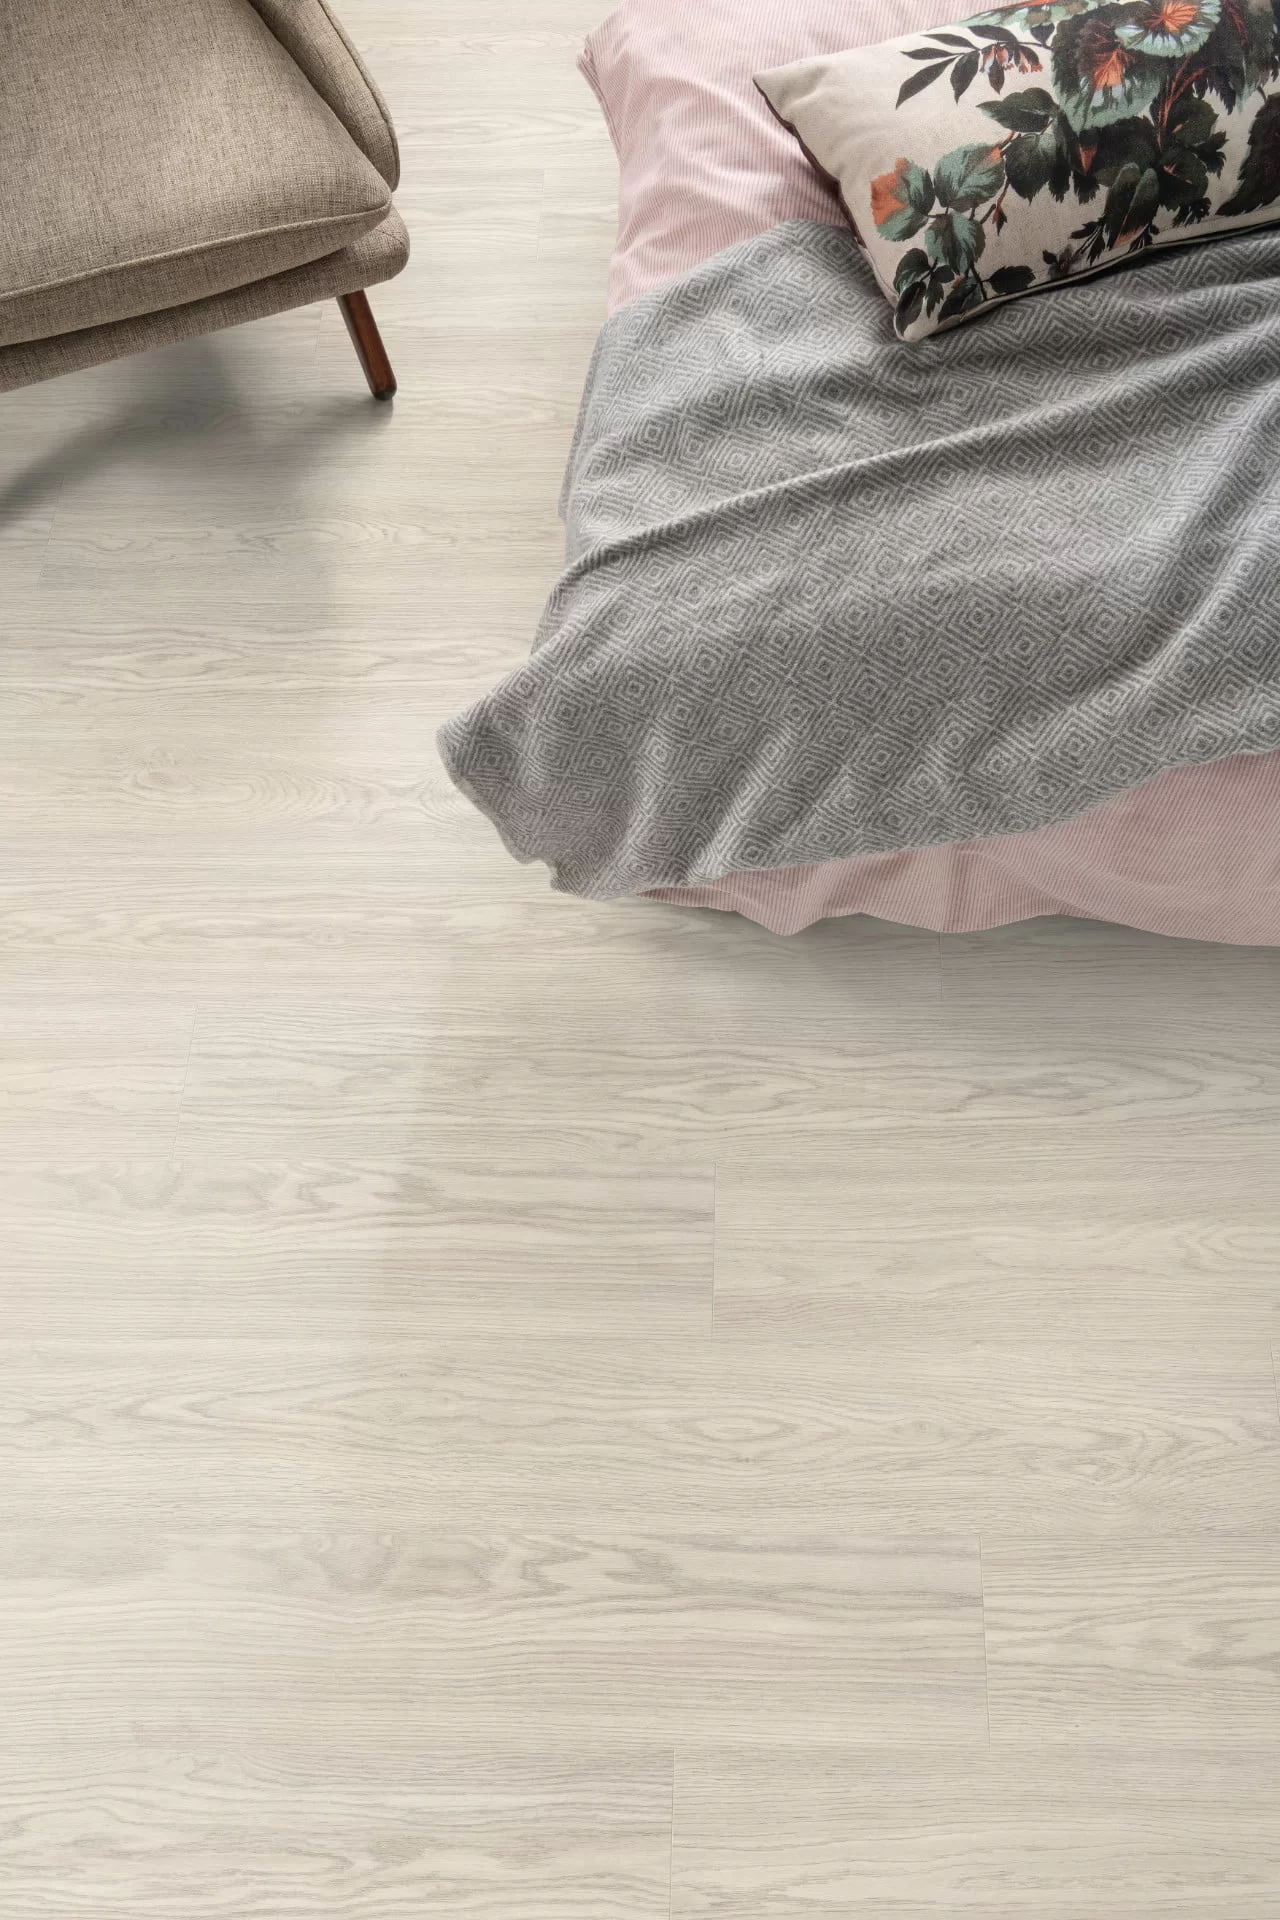 white laminate floor